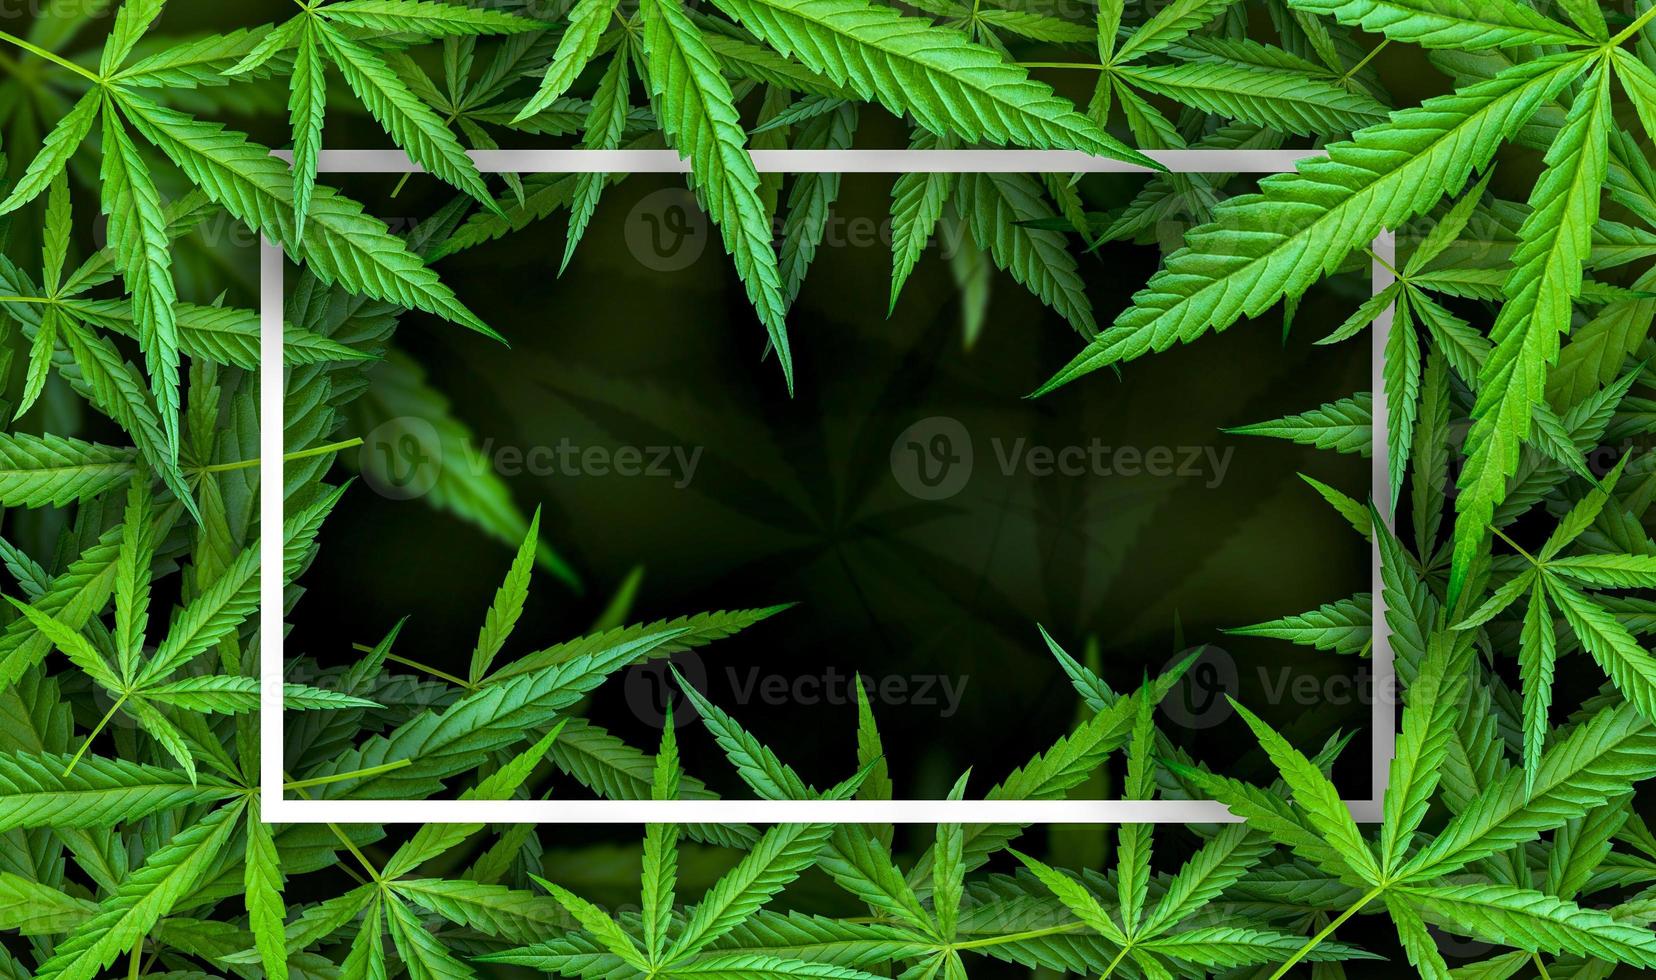 ilustrações de folhas de maconha em fundo escuro de cannabis foto